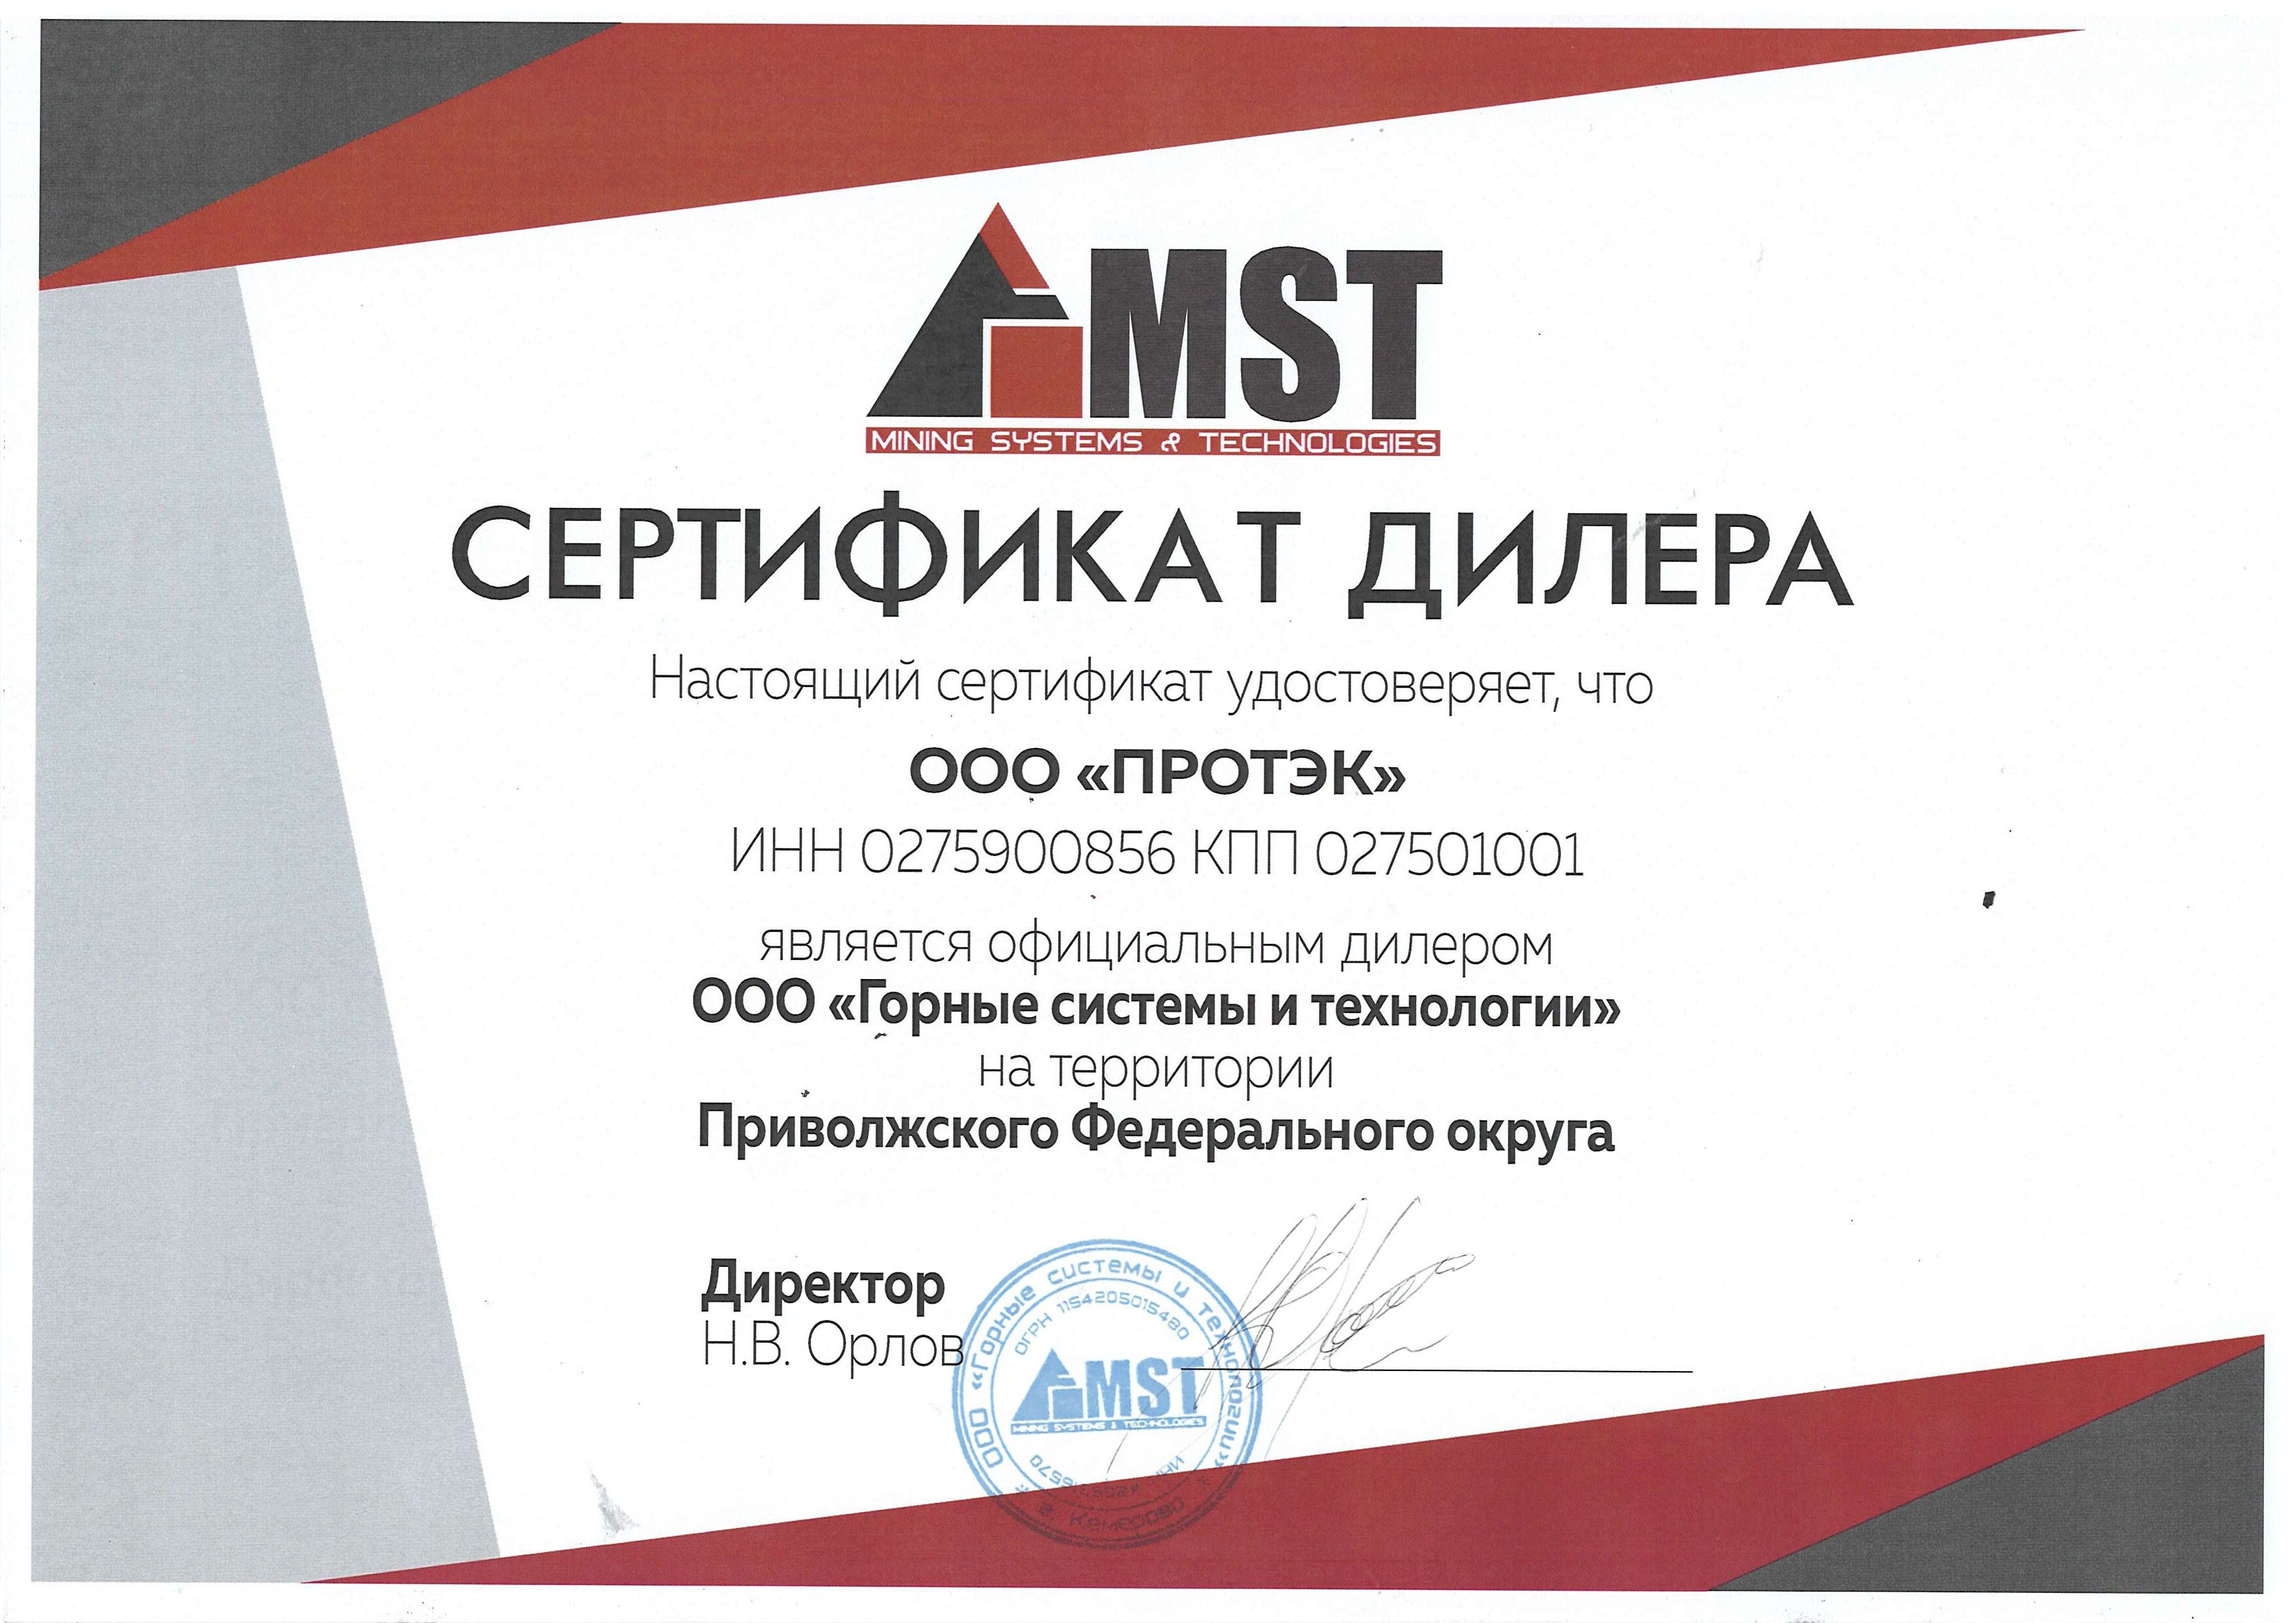 Сертификат дилера ООО "Горные системы и технологии"